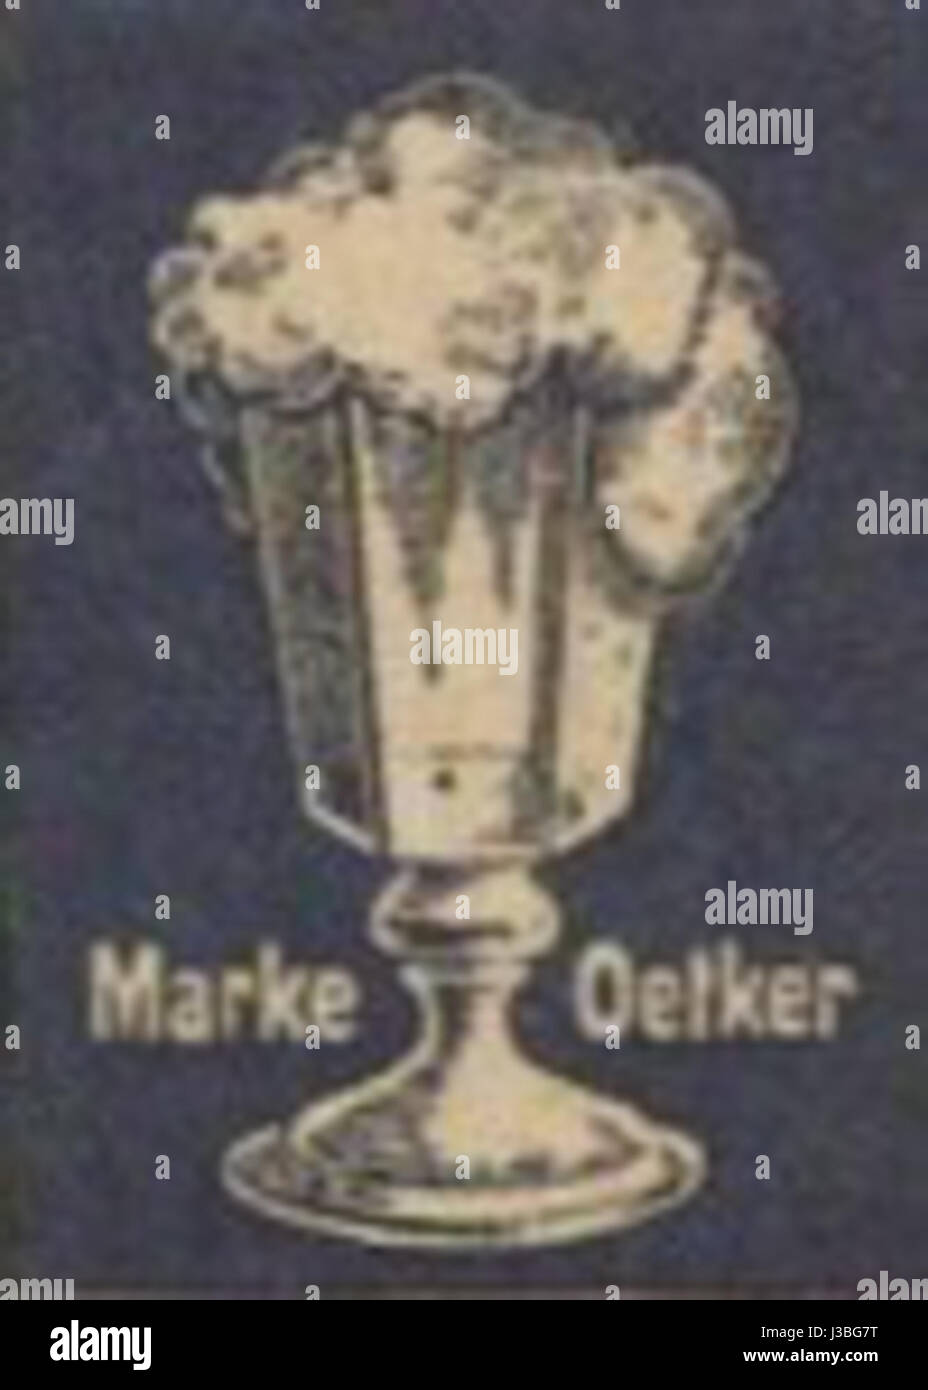 Dr oetker logo -Fotos und -Bildmaterial in hoher Auflösung – Alamy